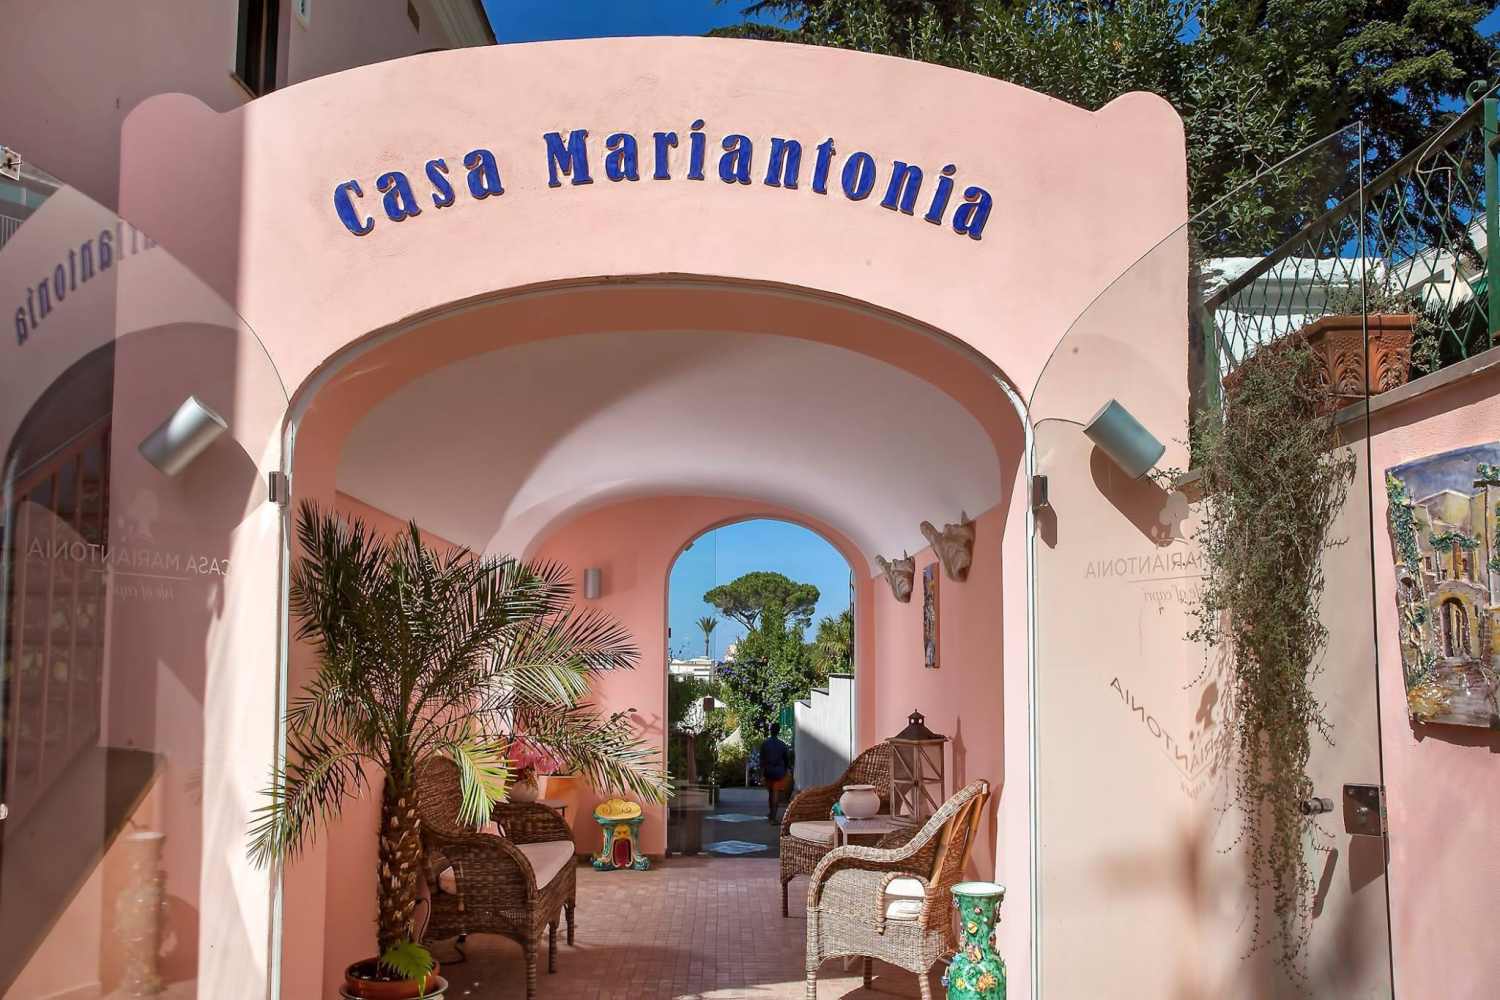 Hotel Casa Mariantonia Capri, Campania - Italy